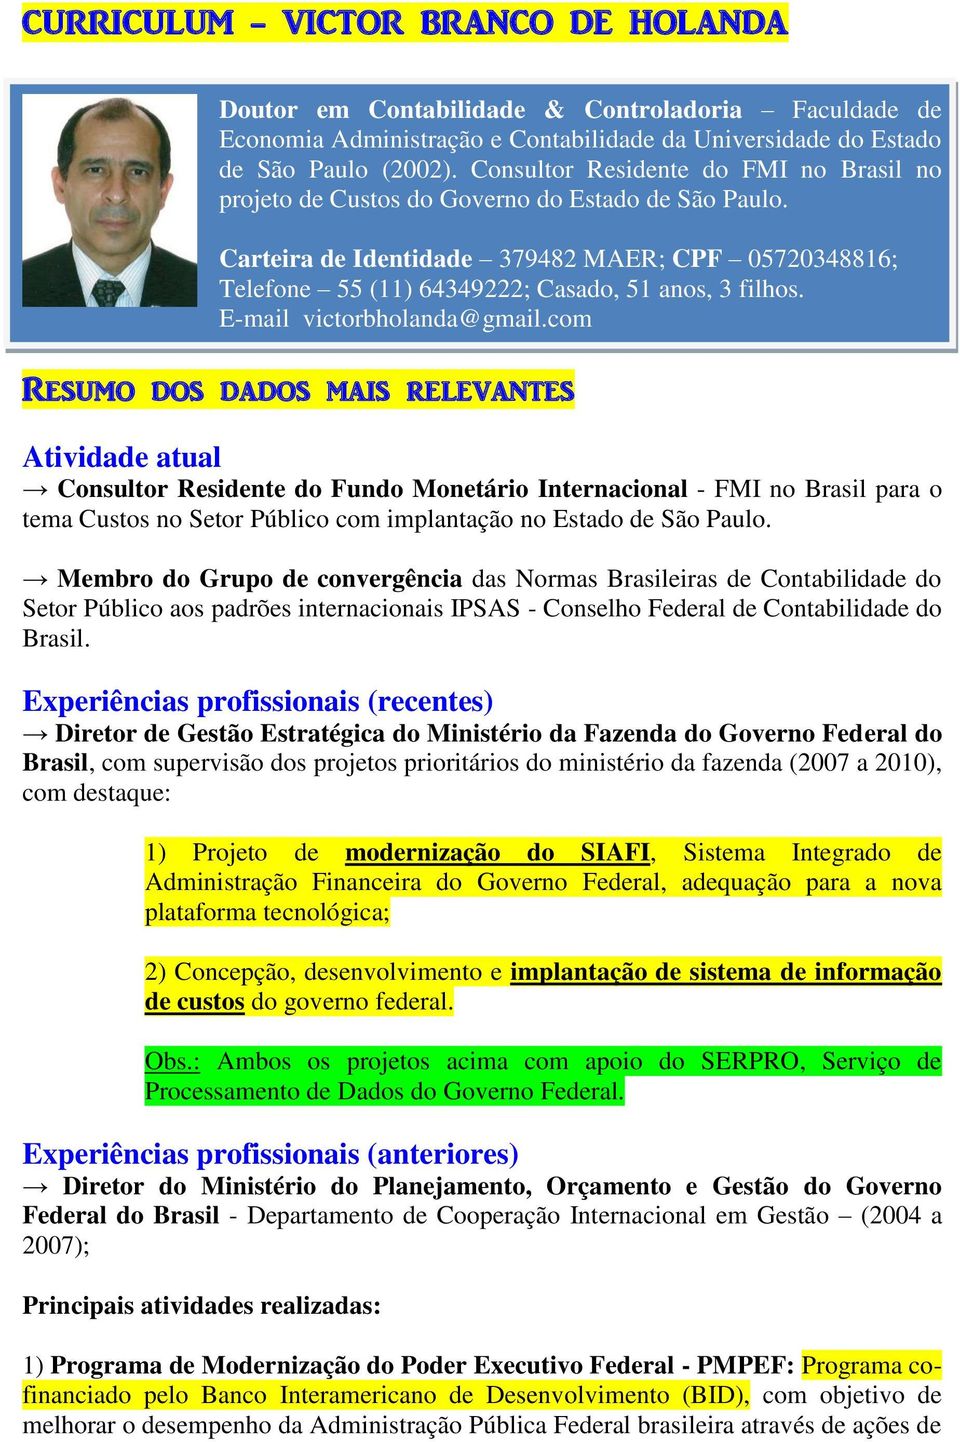 Membro do Grupo de convergência das Normas Brasileiras de Contabilidade do Setor Público aos padrões internacionais IPSAS - Conselho Federal de Contabilidade do Brasil.